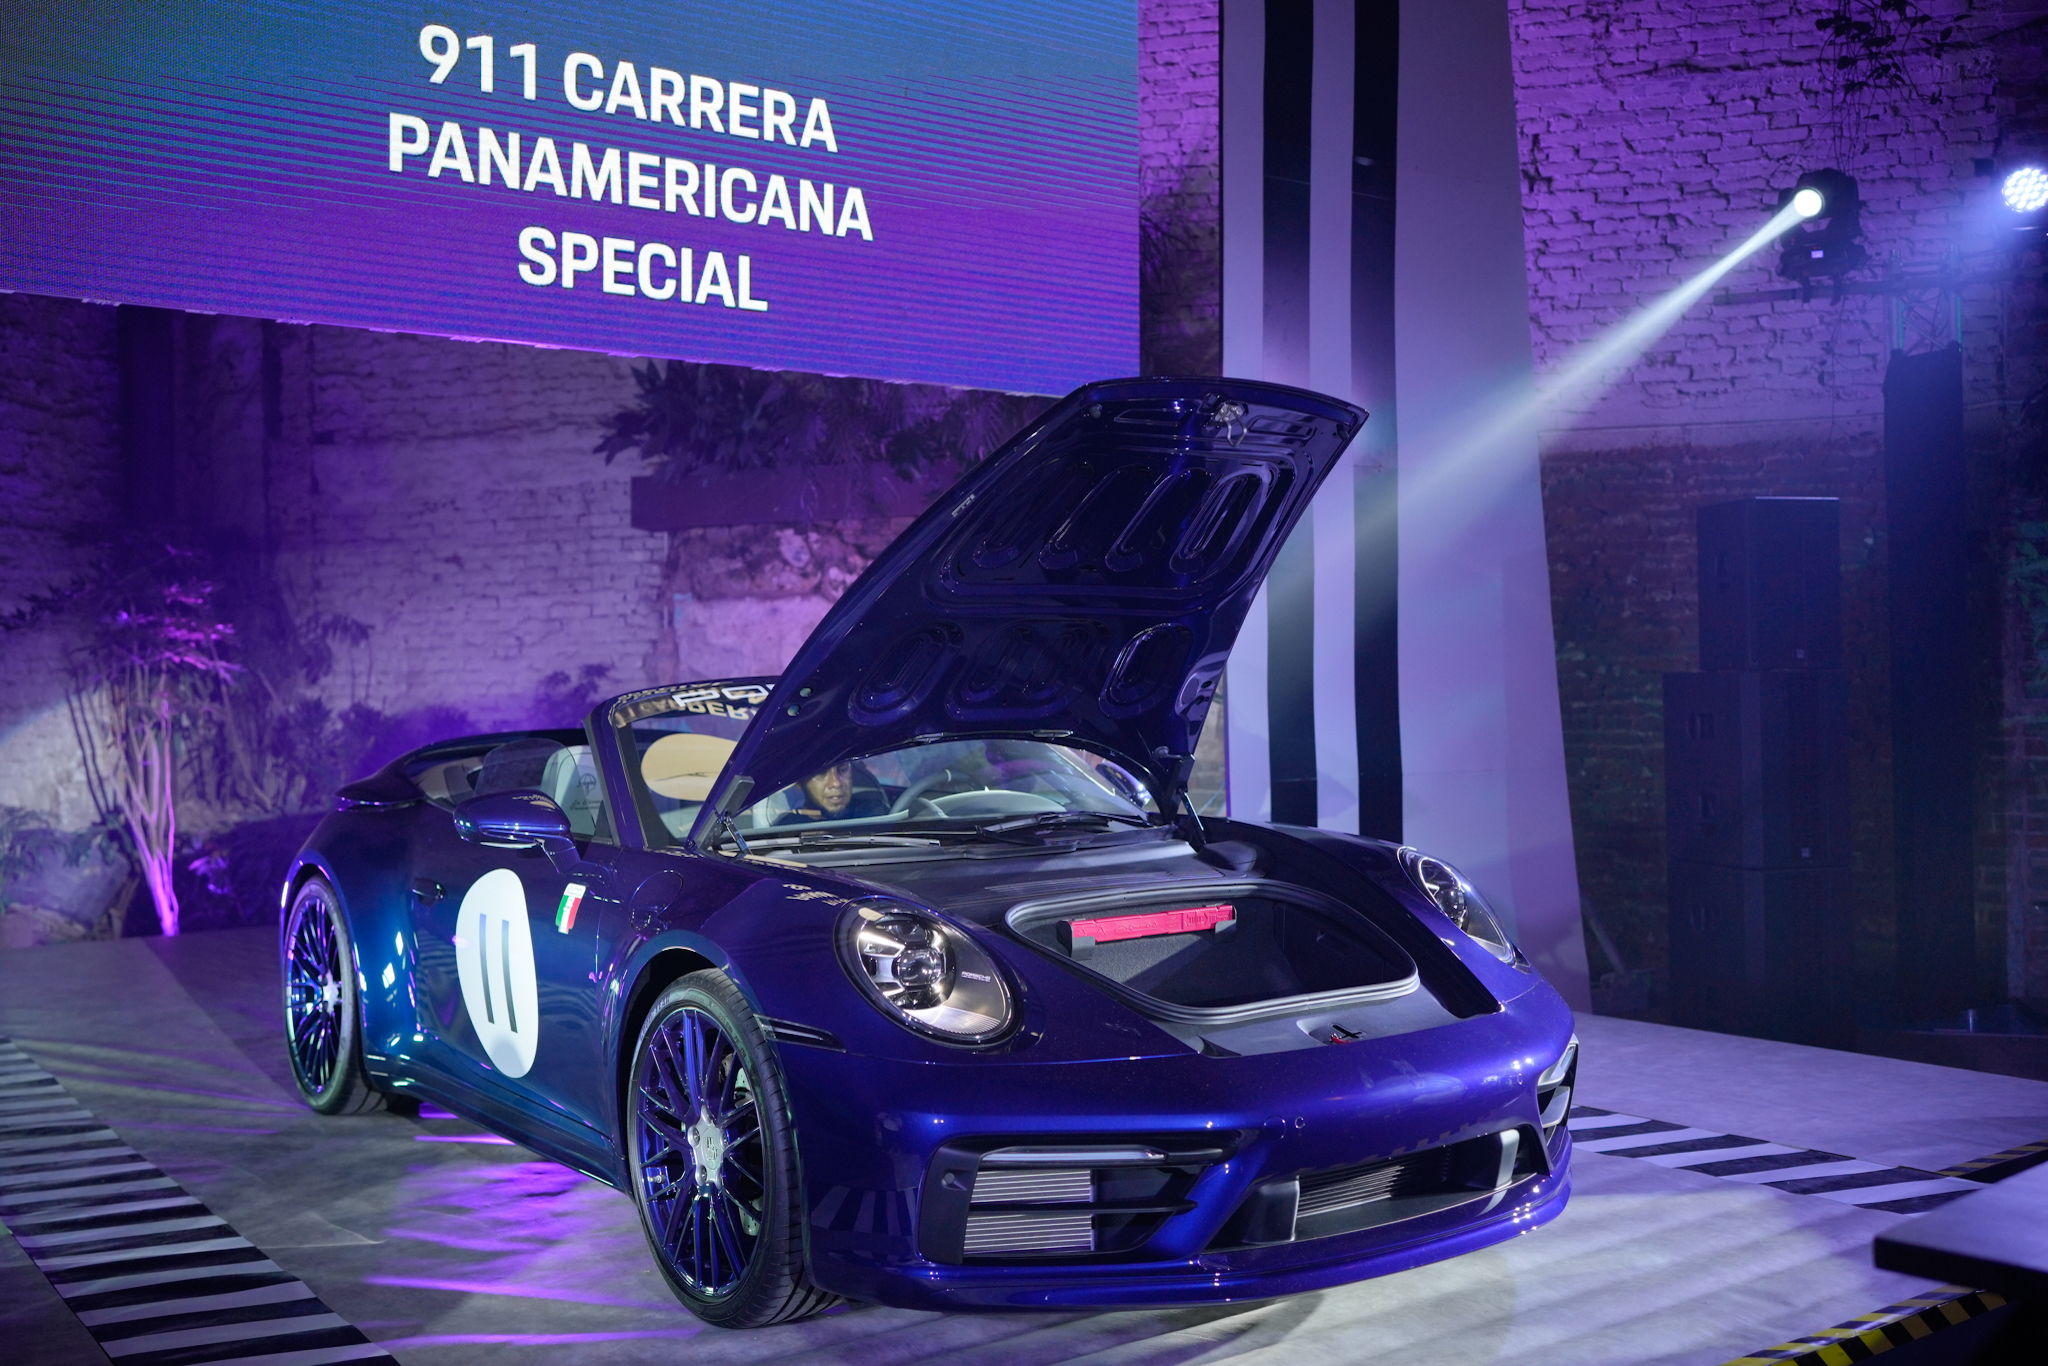 El Porsche 911 Carrera Panamericana Special fue presentado en General Prim 30